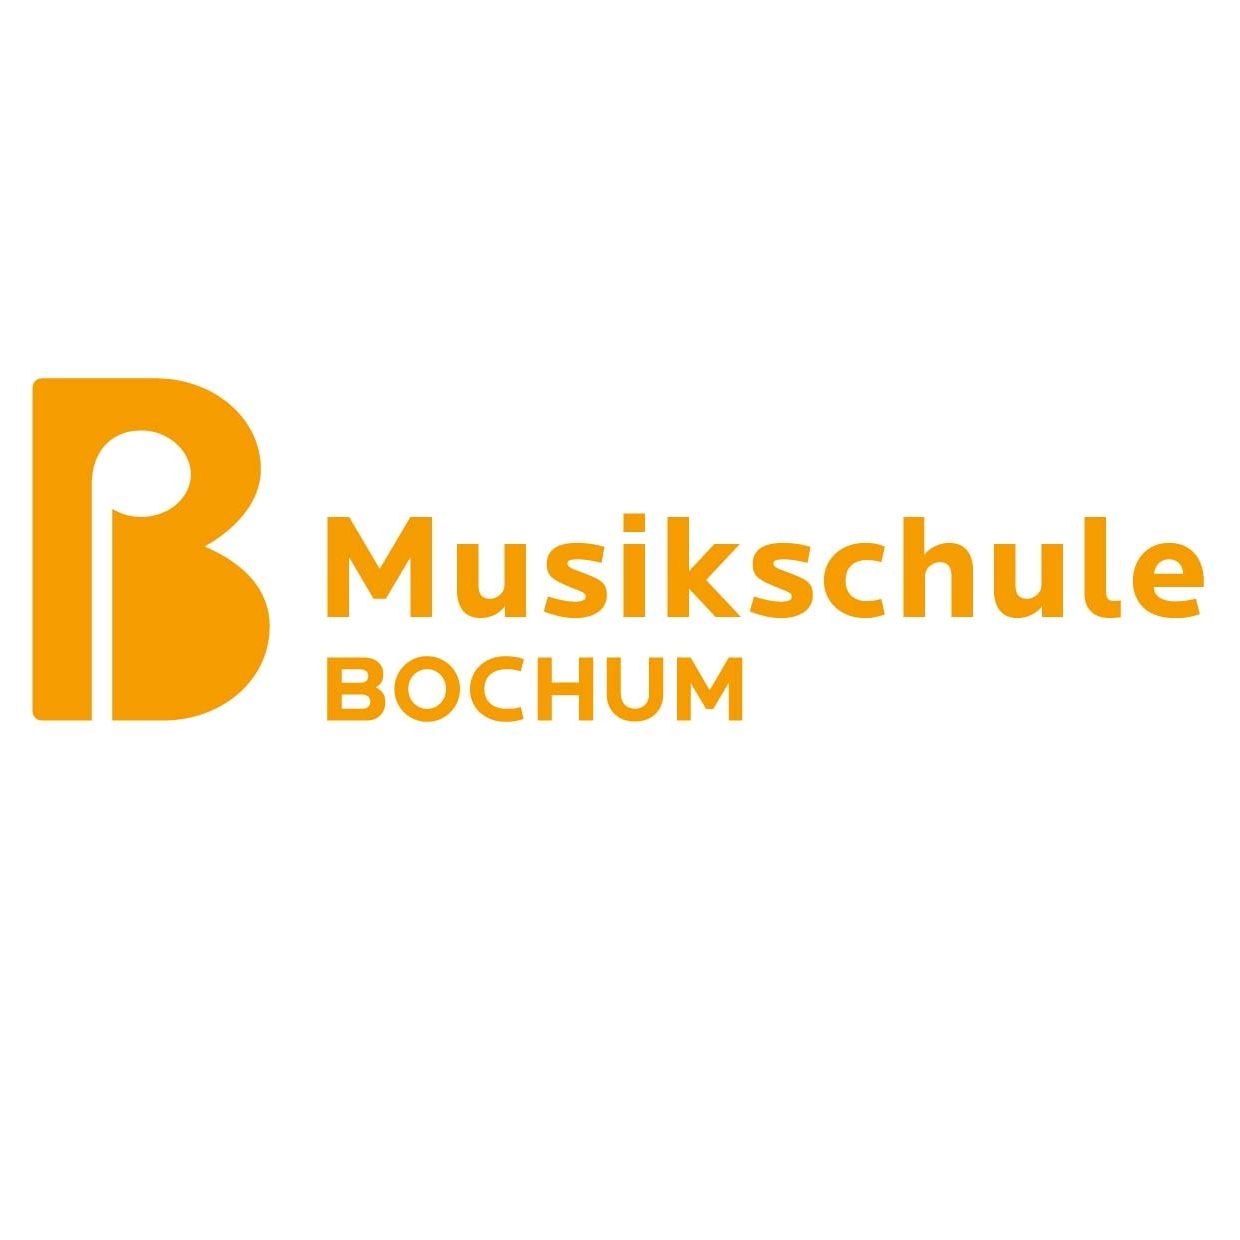 Musikschule Bochum